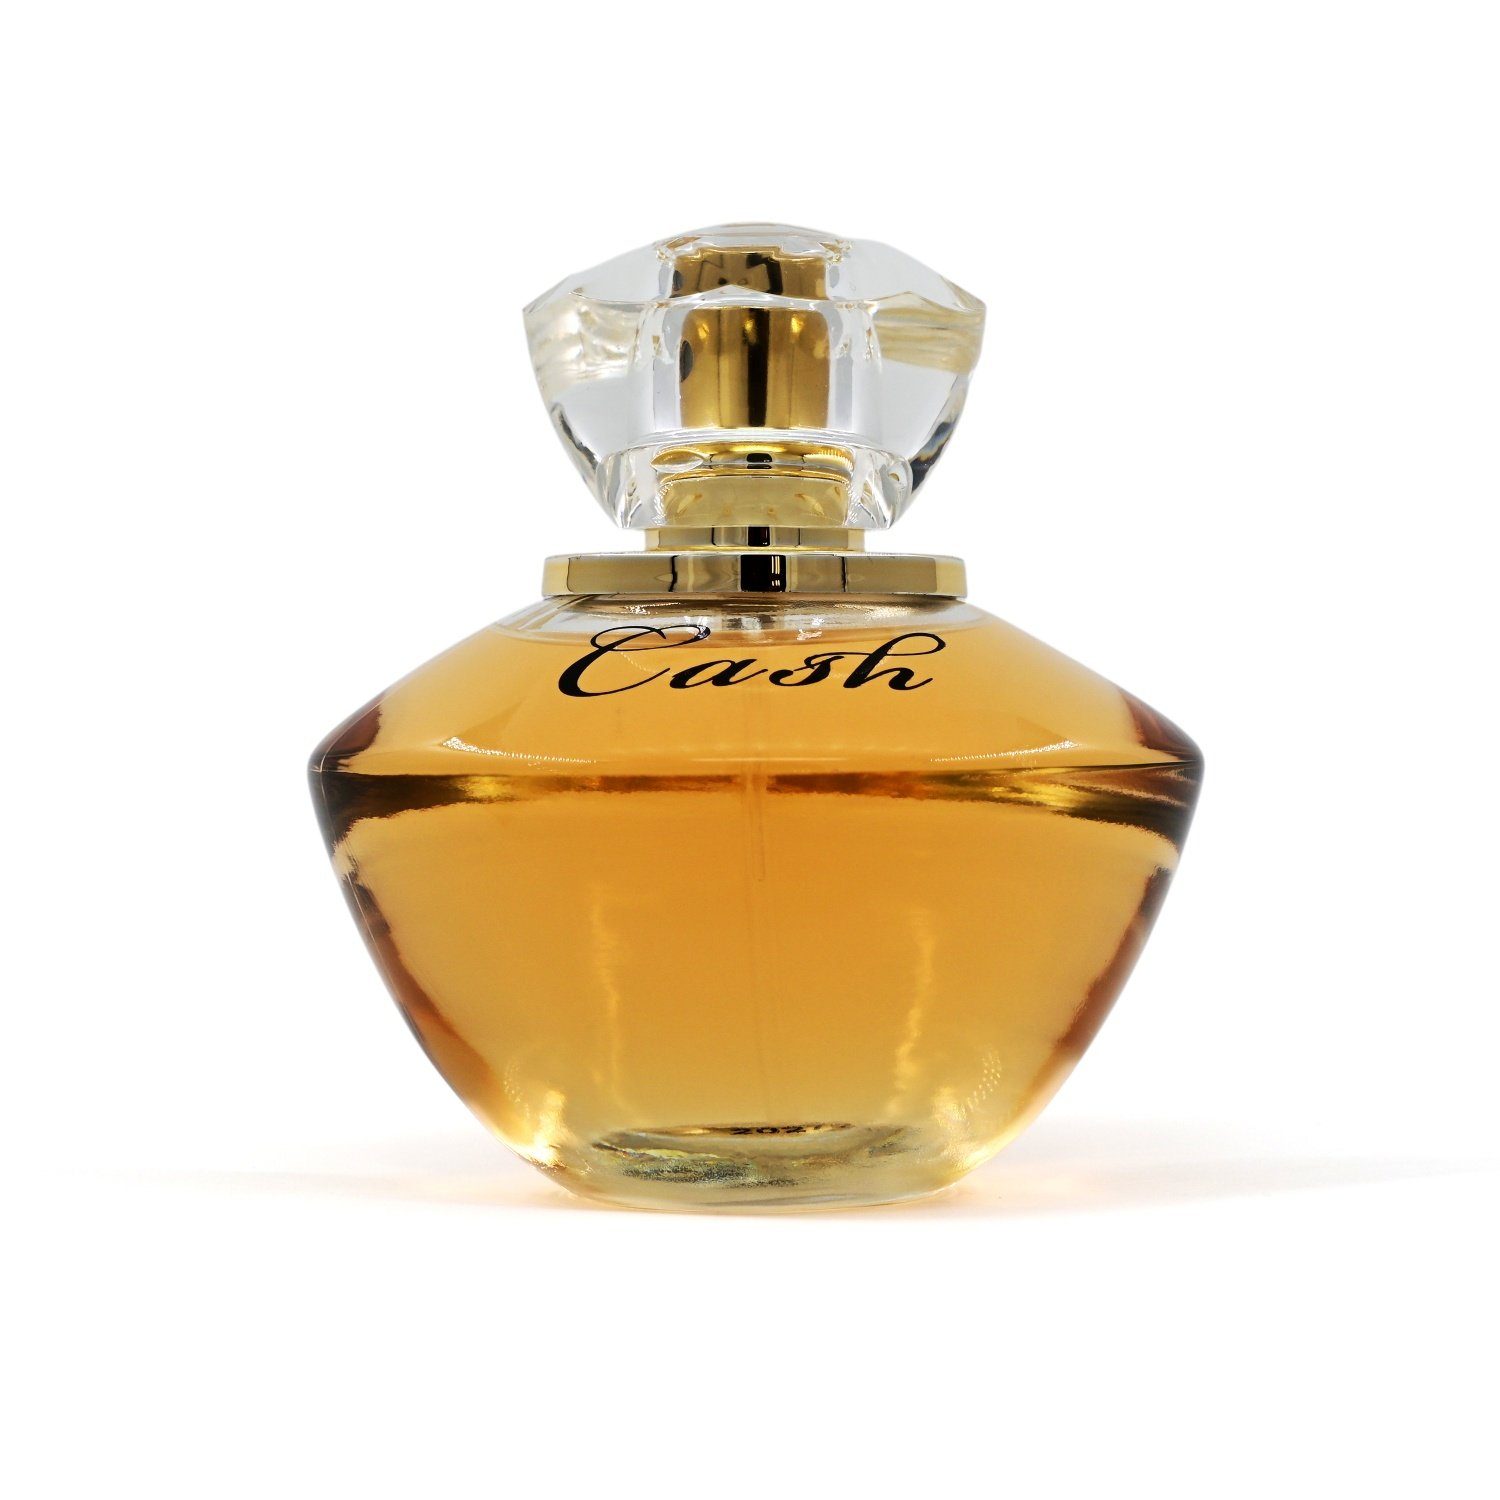 LA - Eau Parfum Eau La de Parfum - ml, Cash RIVE 90 Rive Woman 90 de ml